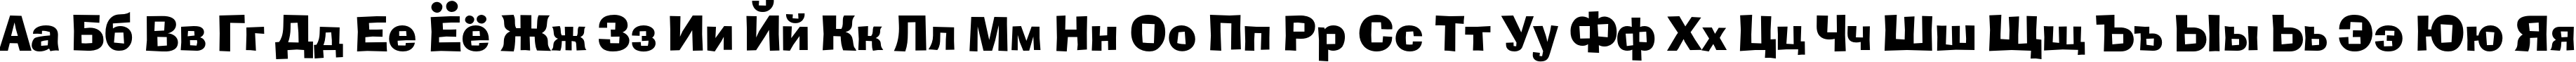 Пример написания русского алфавита шрифтом Ad Lib C BT